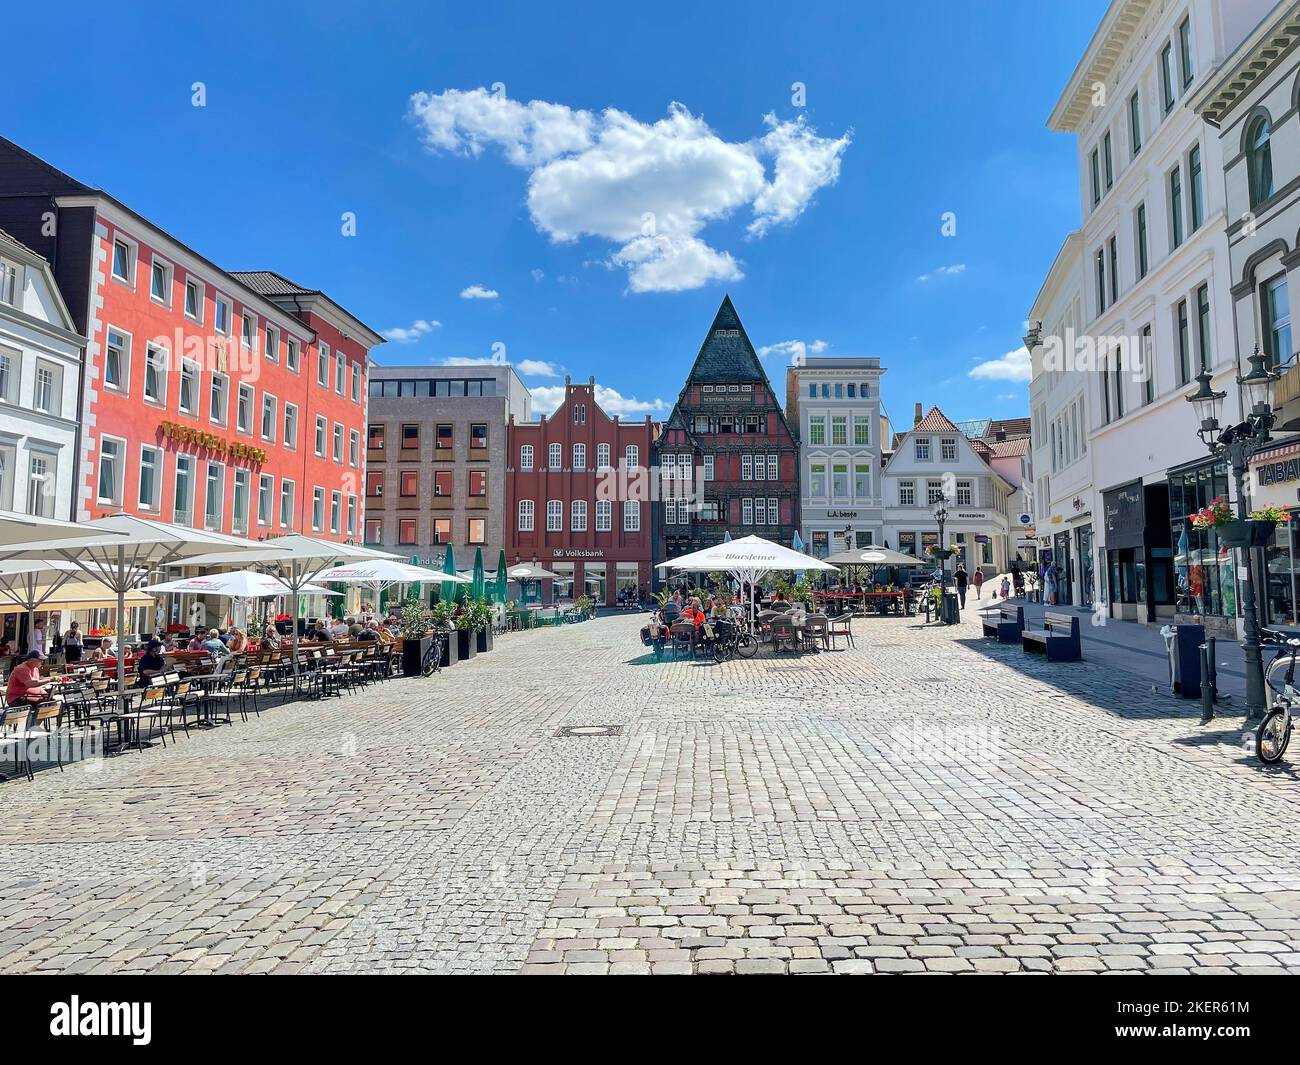 Historischer Marktplatz mit Straßencafés und Restaurants im Freien in Minden, Westfalia, Deutschland Stockfoto